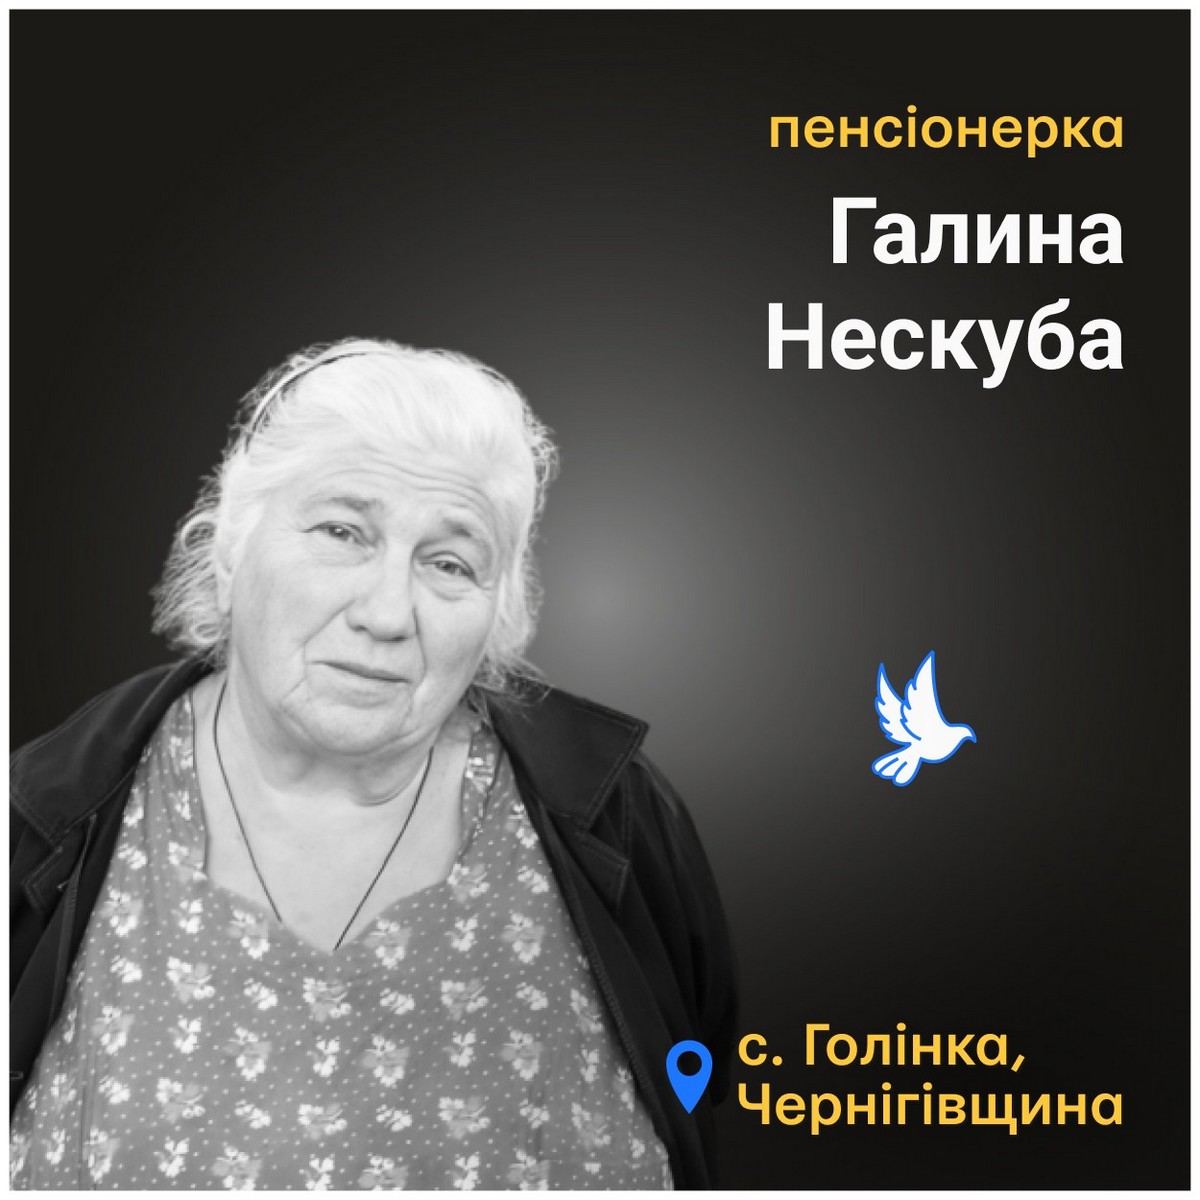 Меморіал: вбиті росією. Галина Нескуба, 82 роки, Чернігівщина, березень